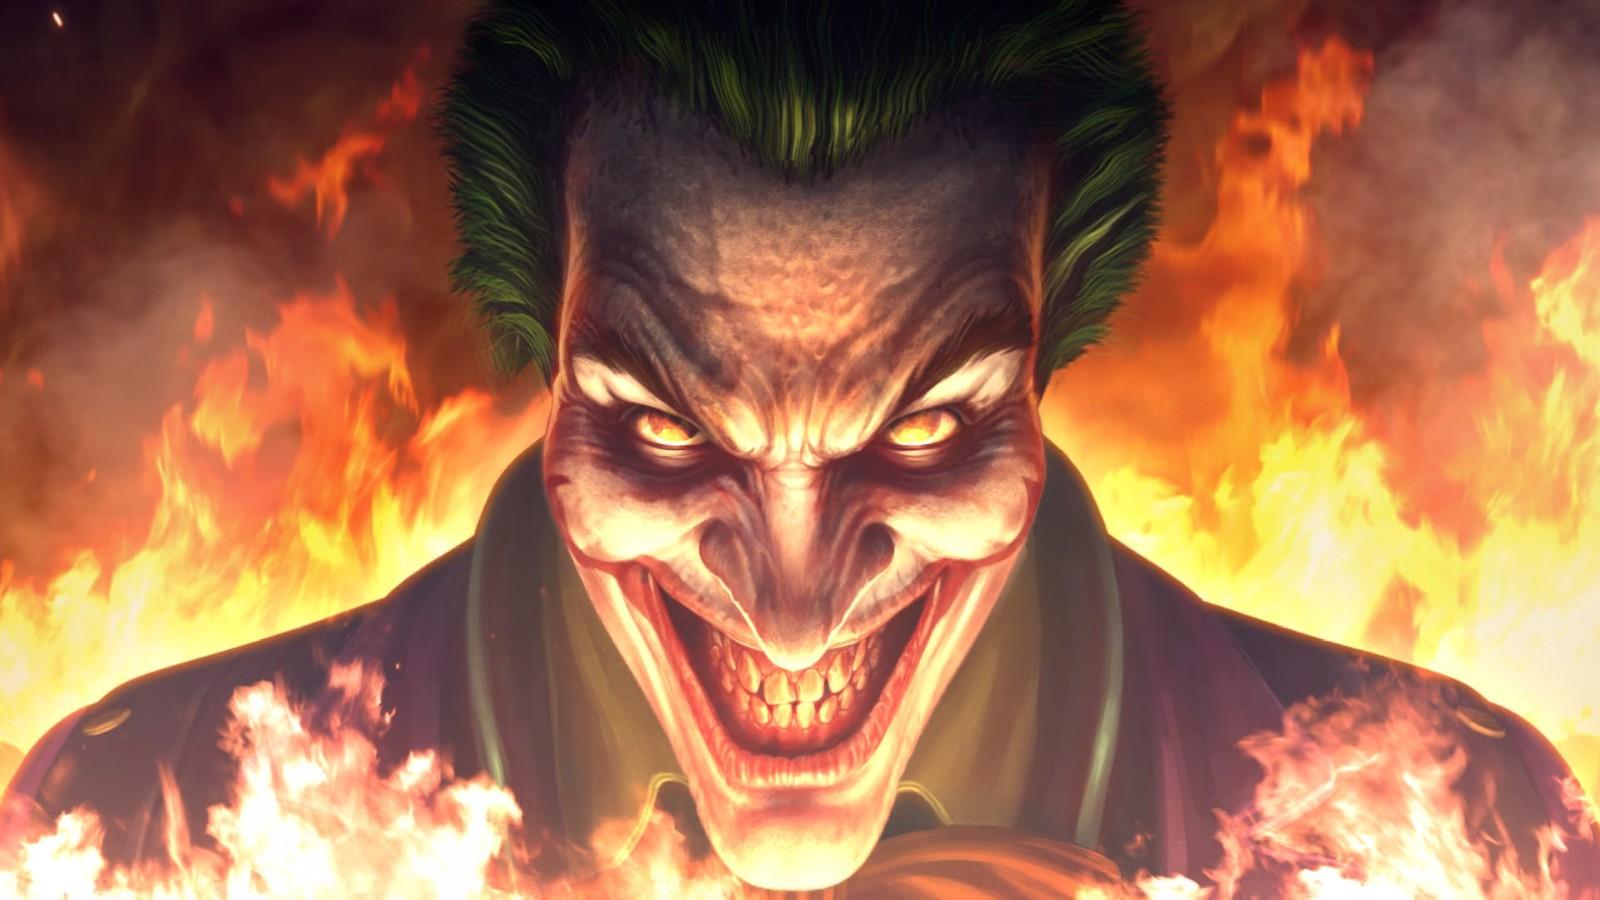 injustice Joker